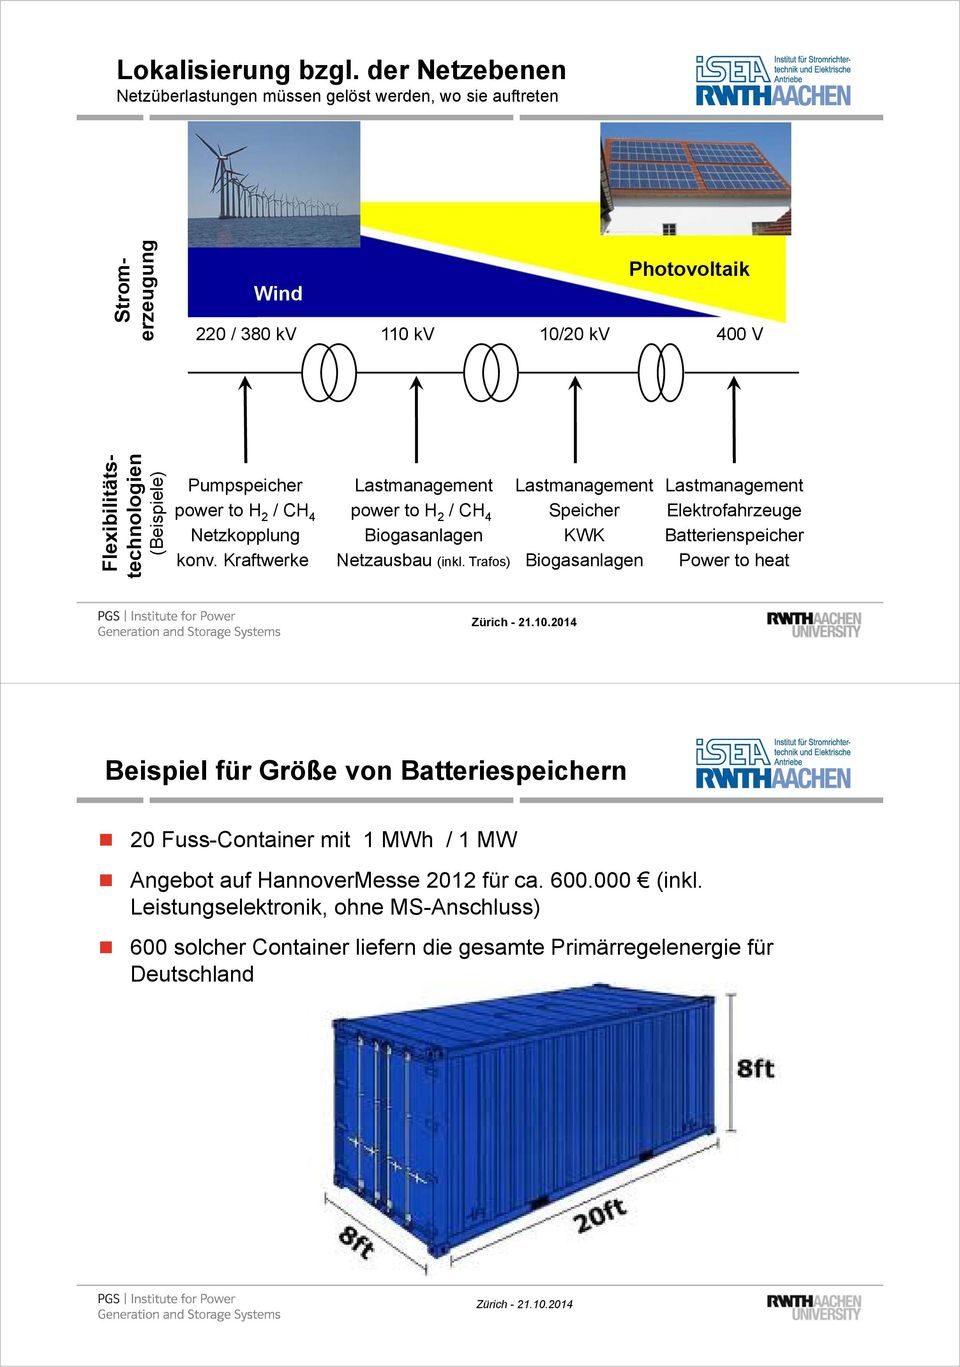 (Beispiele) Pumpspeicher power to H 2 / CH 4 Netzkopplung konv. Kraftwerke Lastmanagement power to H 2 / CH 4 Biogasanlagen Netzausbau (inkl.